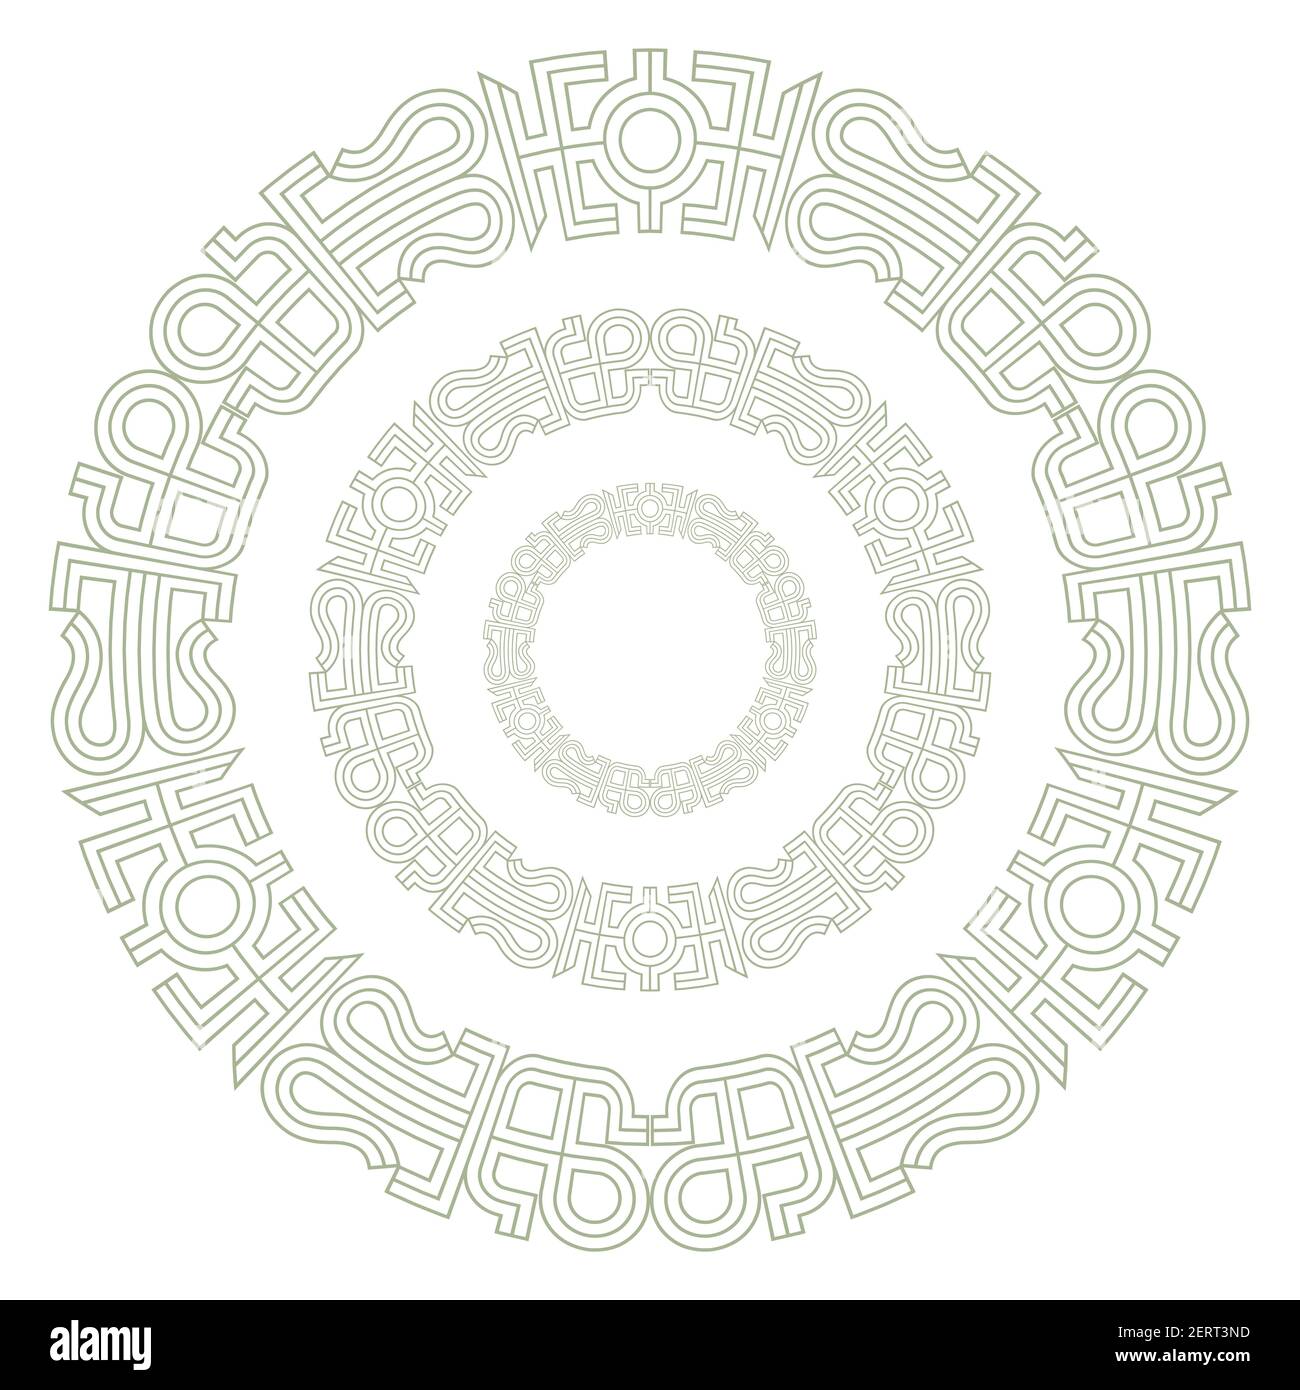 Antique Ronde Celtique, Design Scandinave. Nœud celtique, mandala Illustration de Vecteur